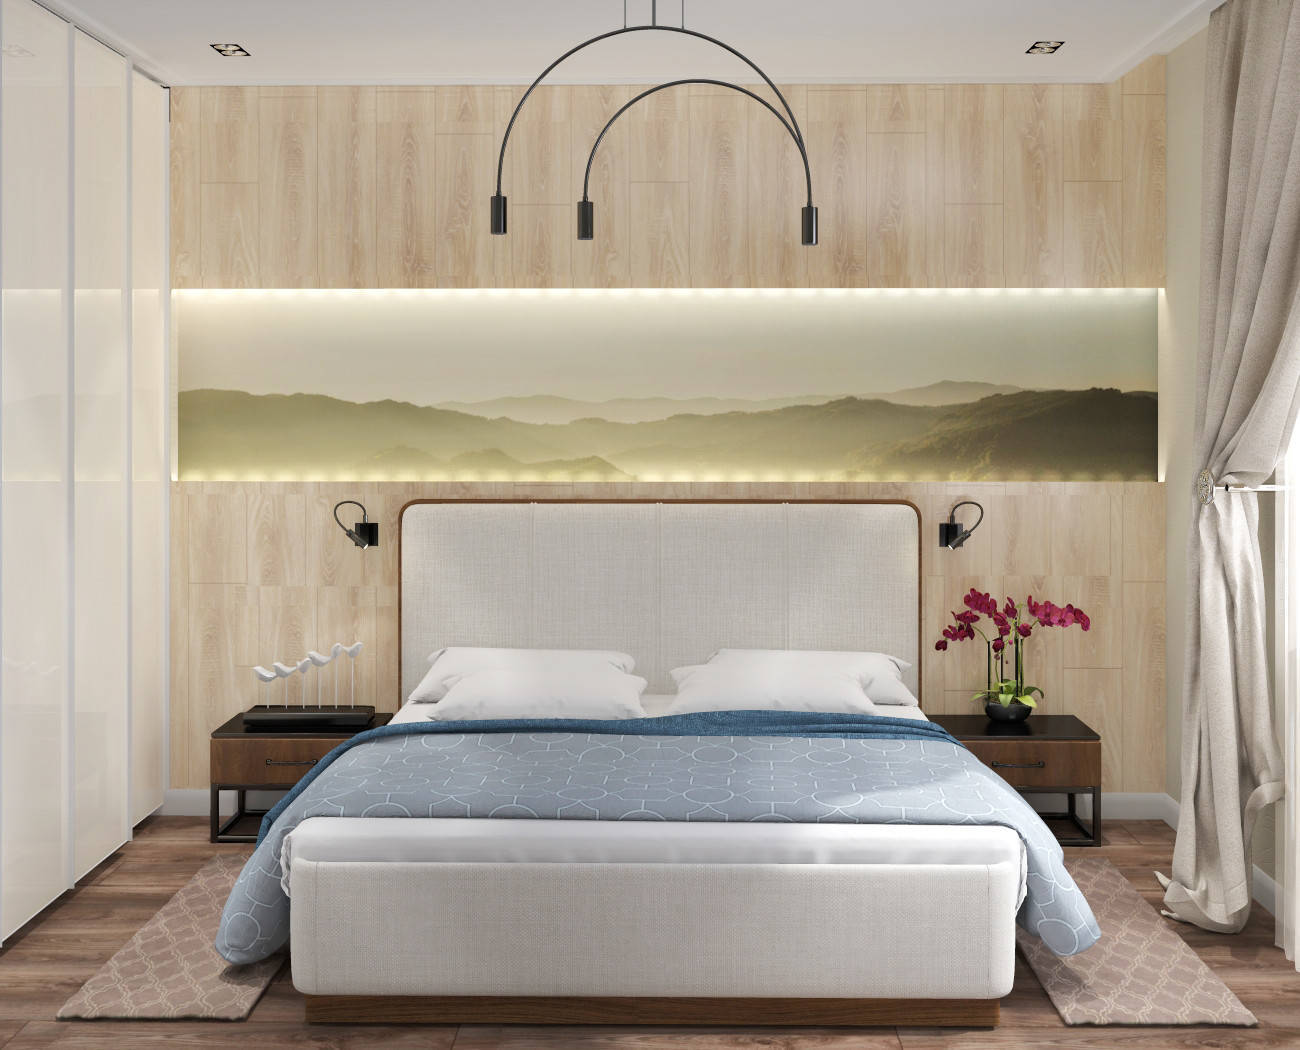 Интерьер спальни с бра над кроватью, подсветкой настенной и светильниками над кроватью в современном стиле